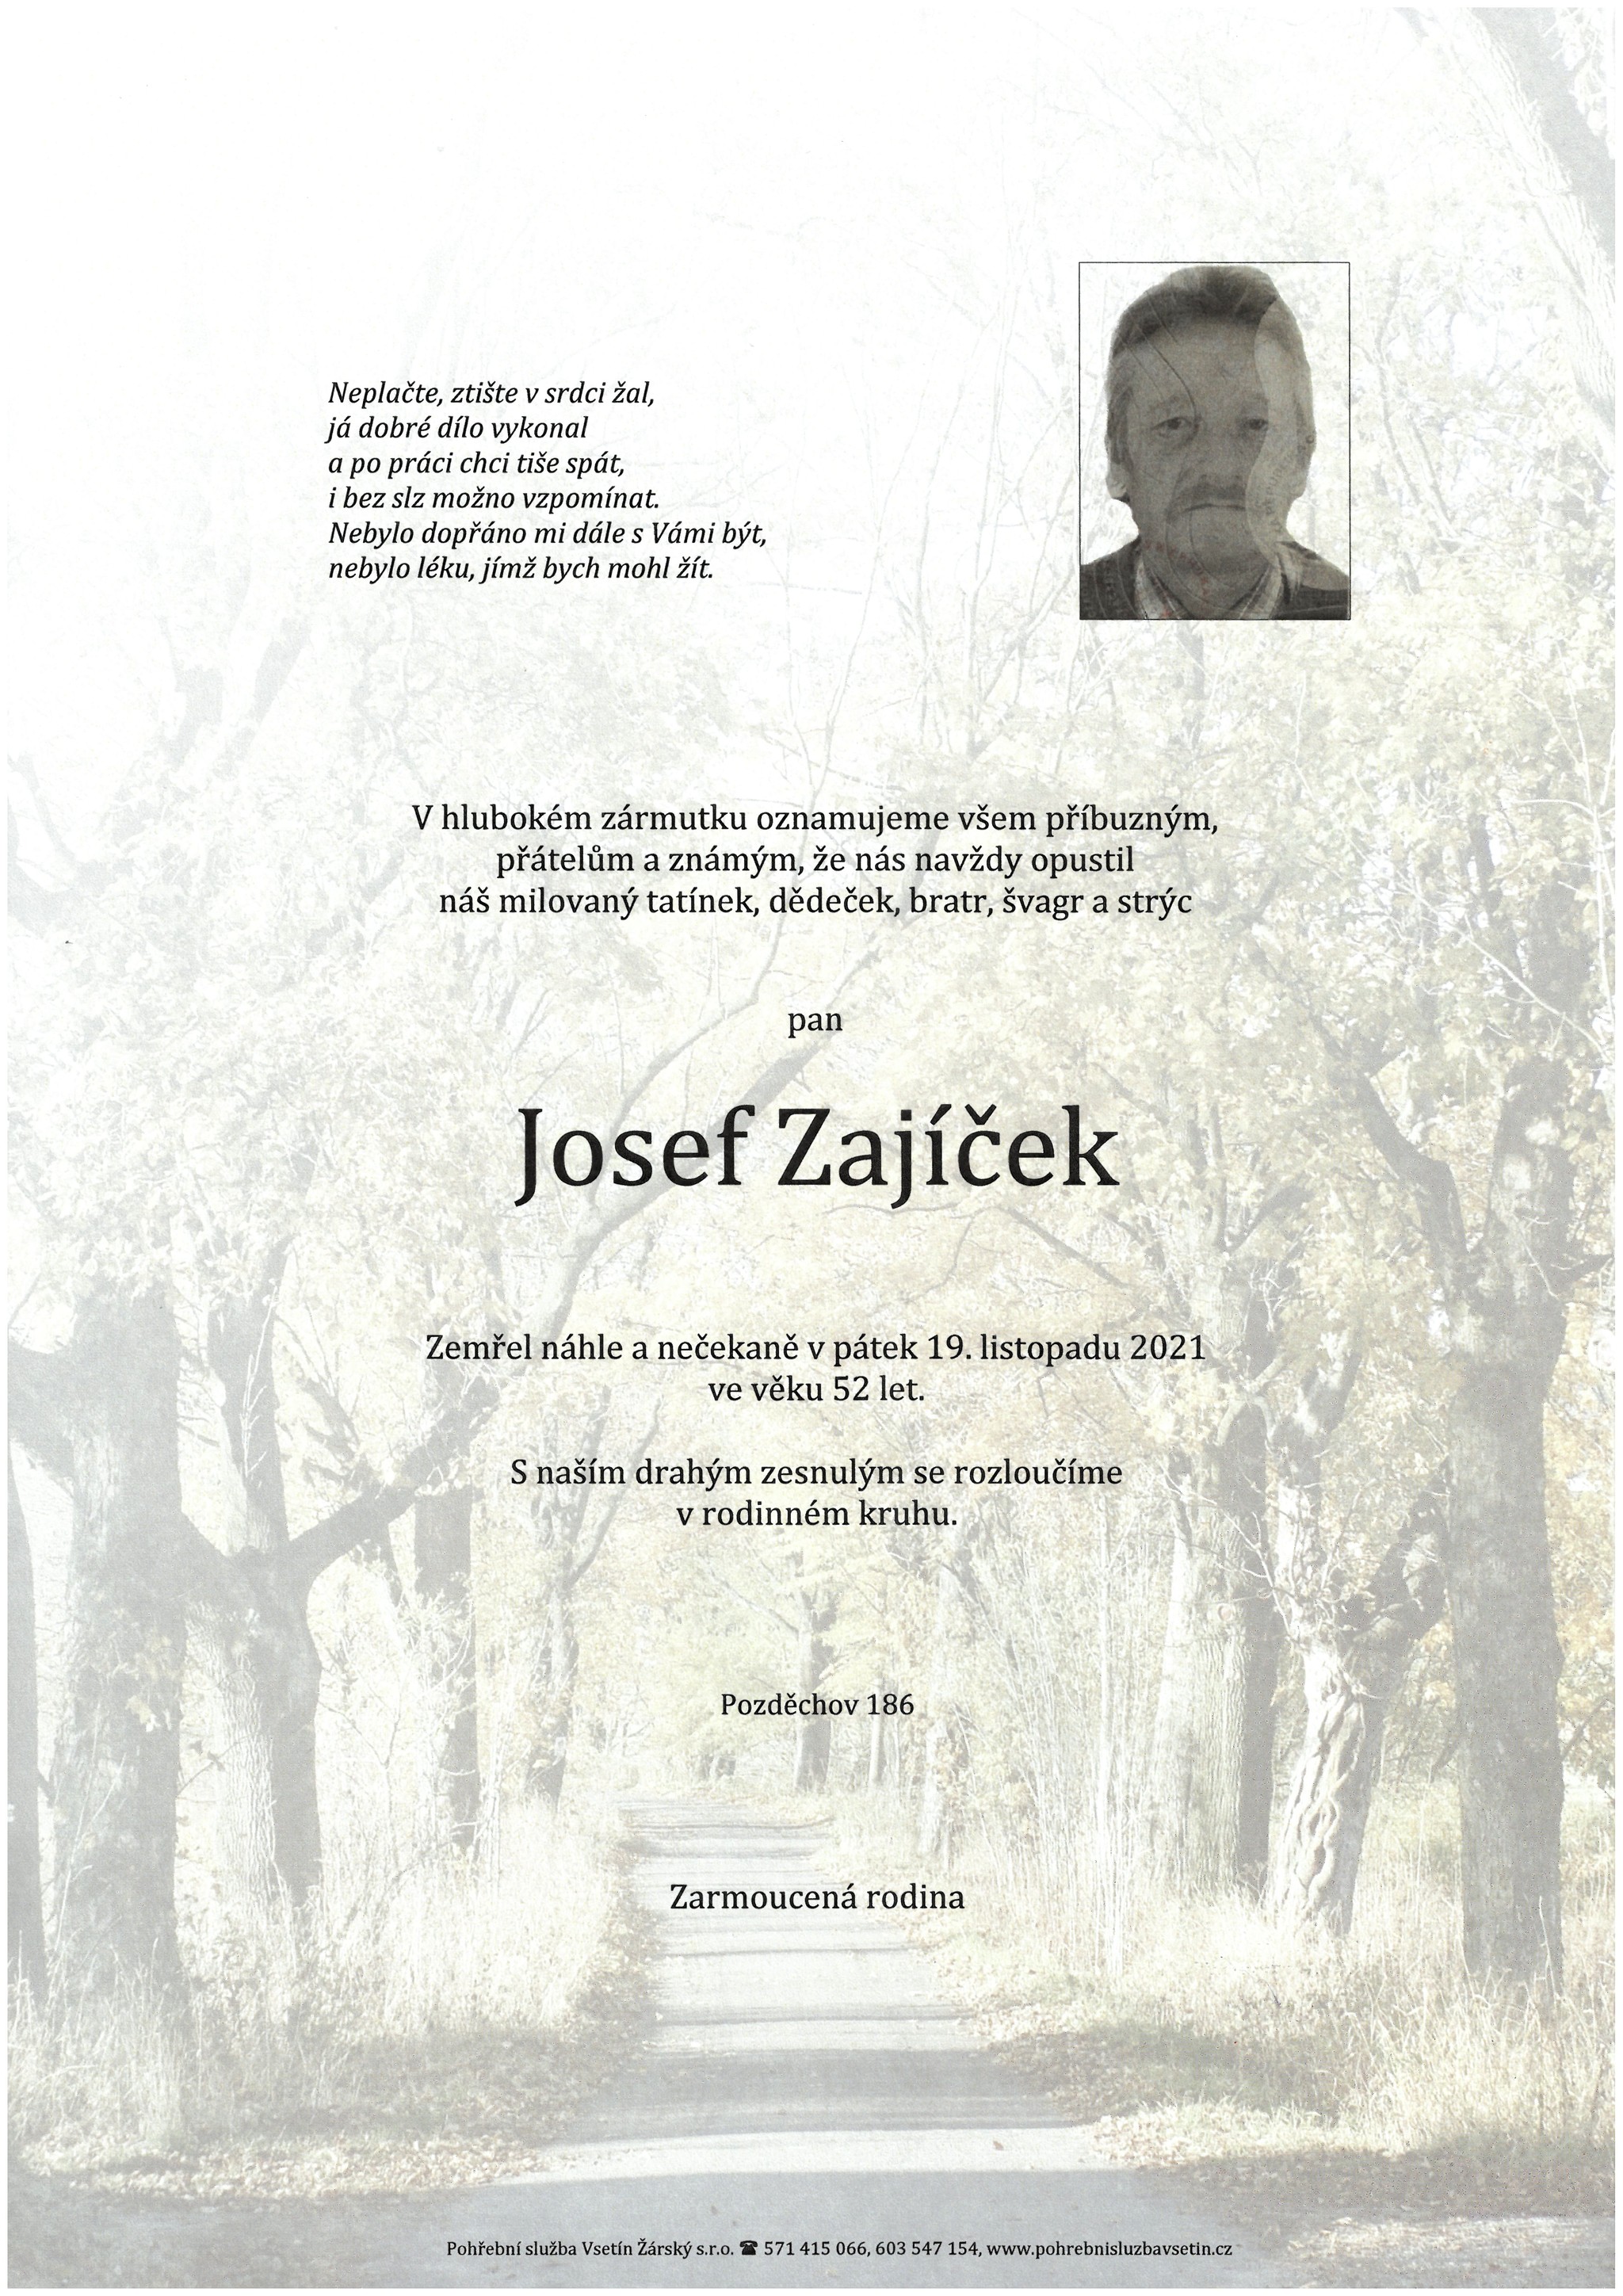 Josef Zajíček